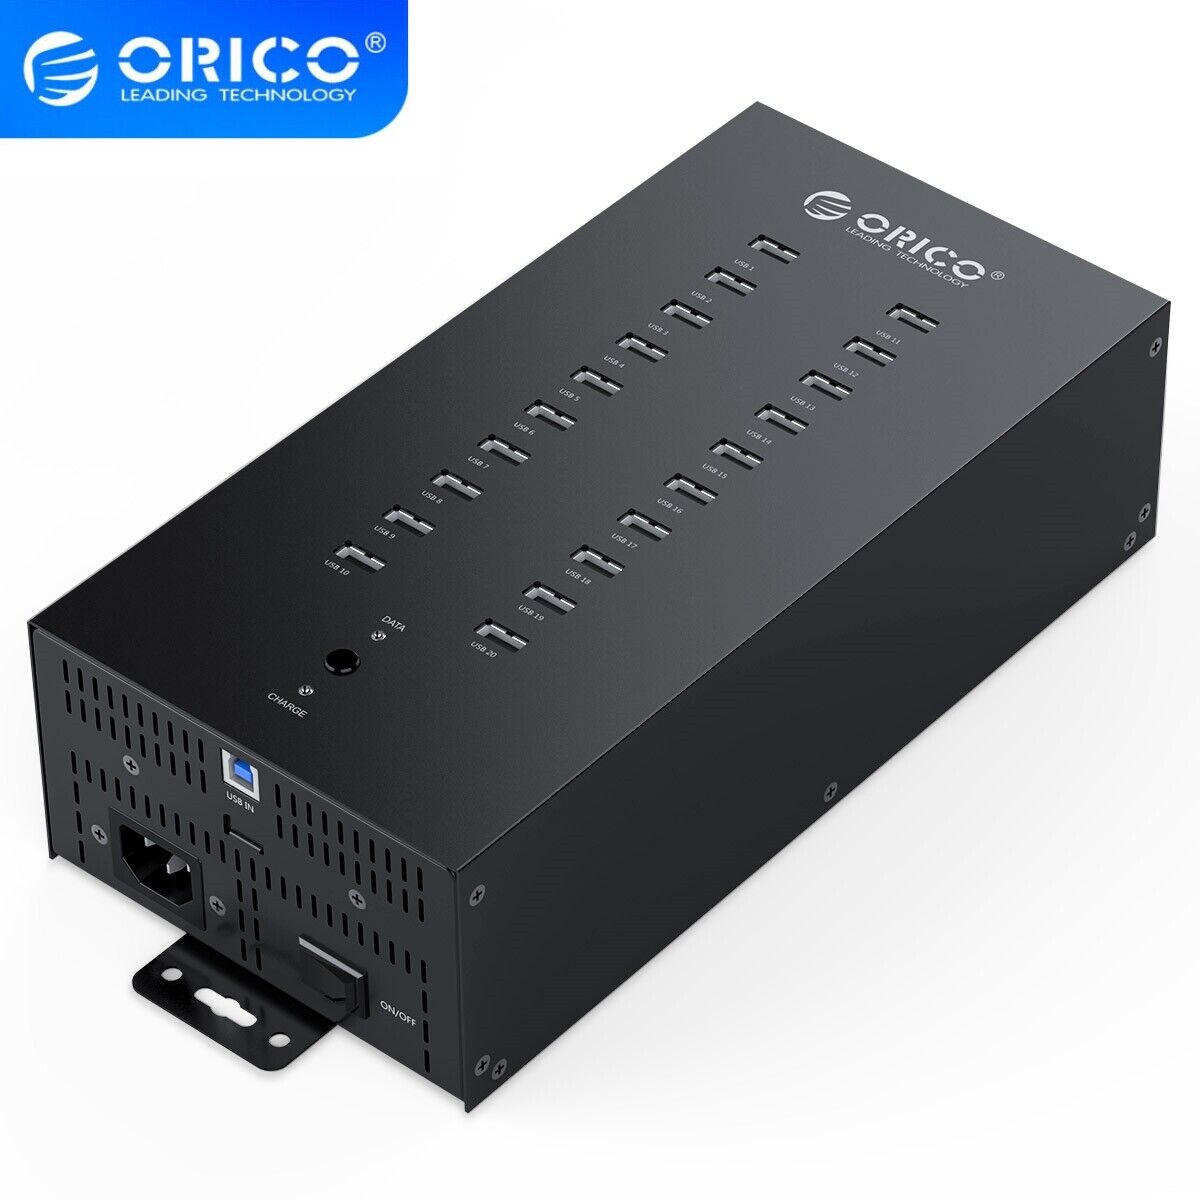 ORICO Industrial USB Hub 300W Powered Data Hub 20 Port USB2.0 Splitter FullMetal